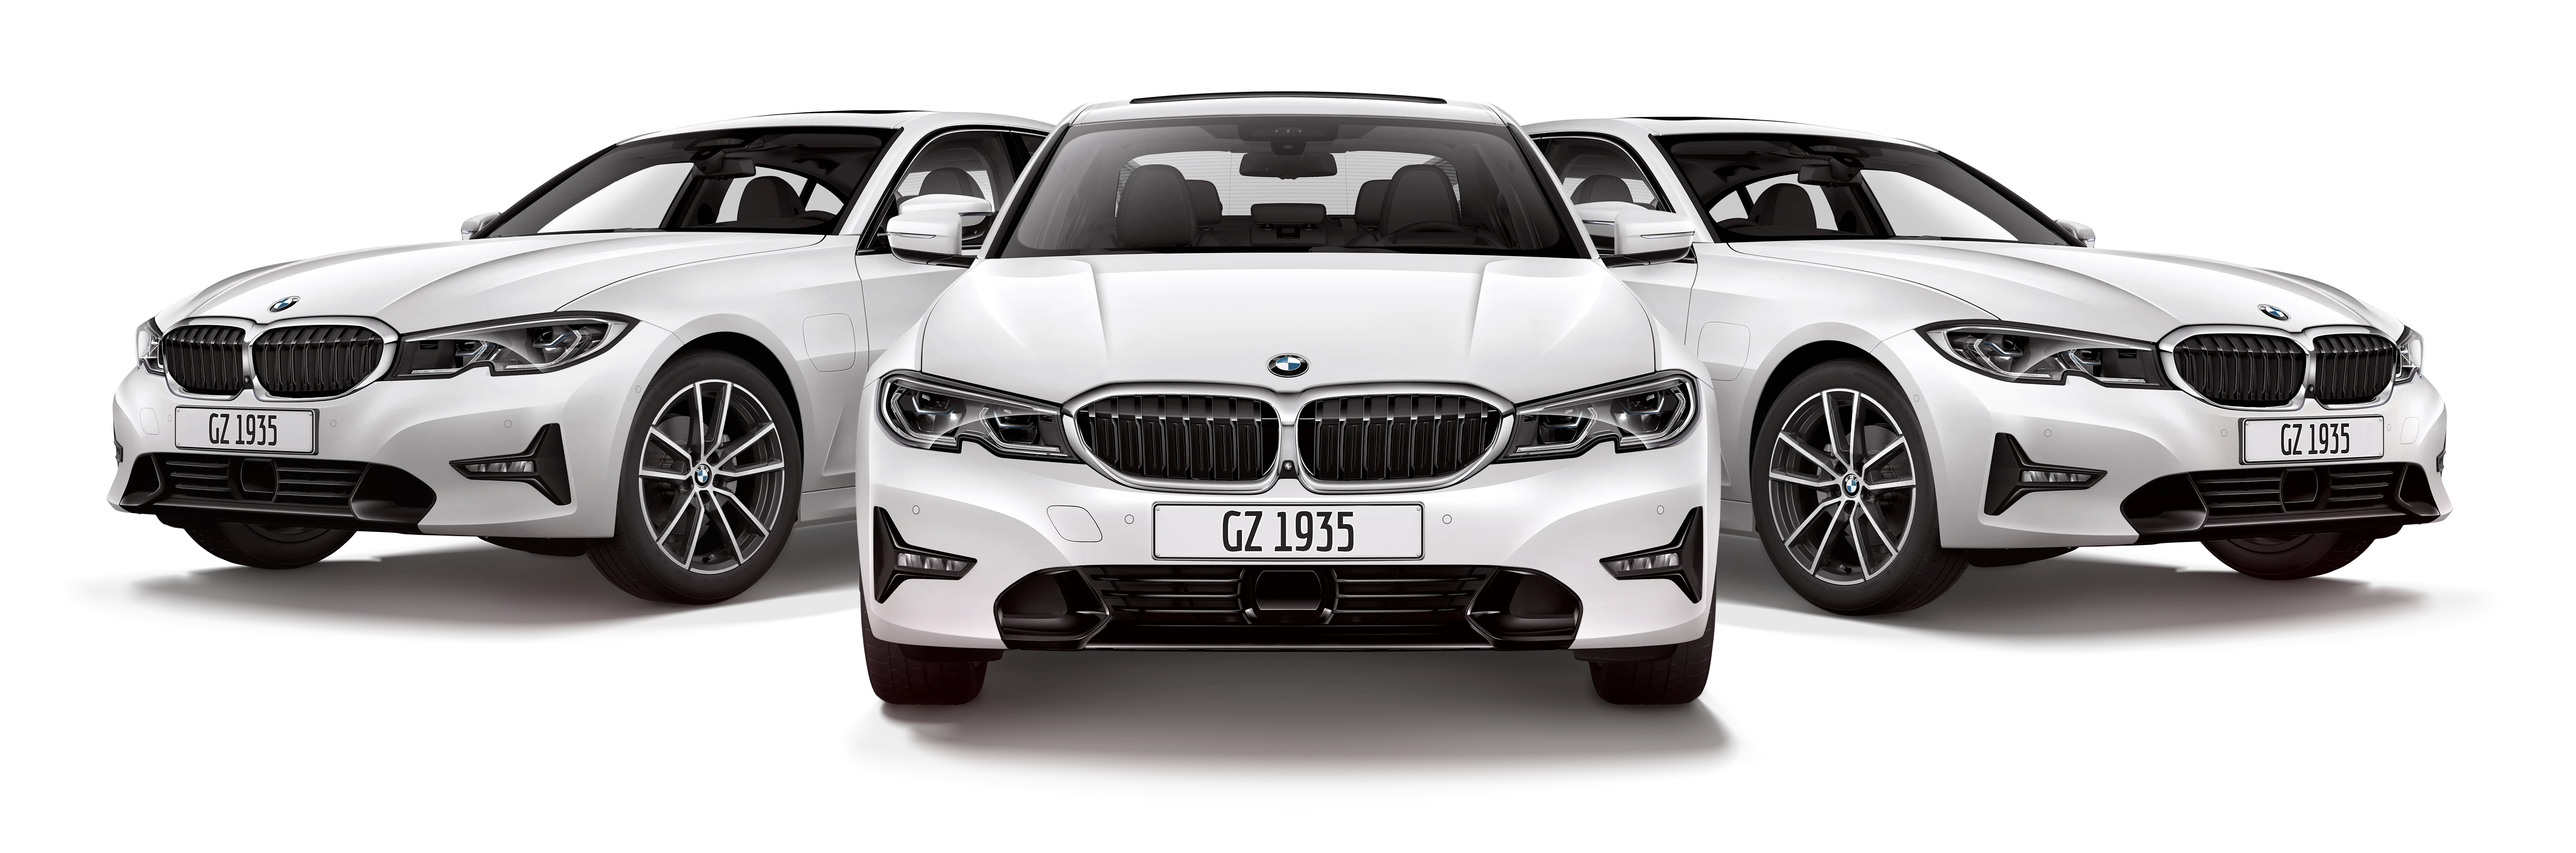 Campanha de Natal do Bourbon Shopping São Paulo vai sortear 3 carros BMW –  Revista Live Marketing